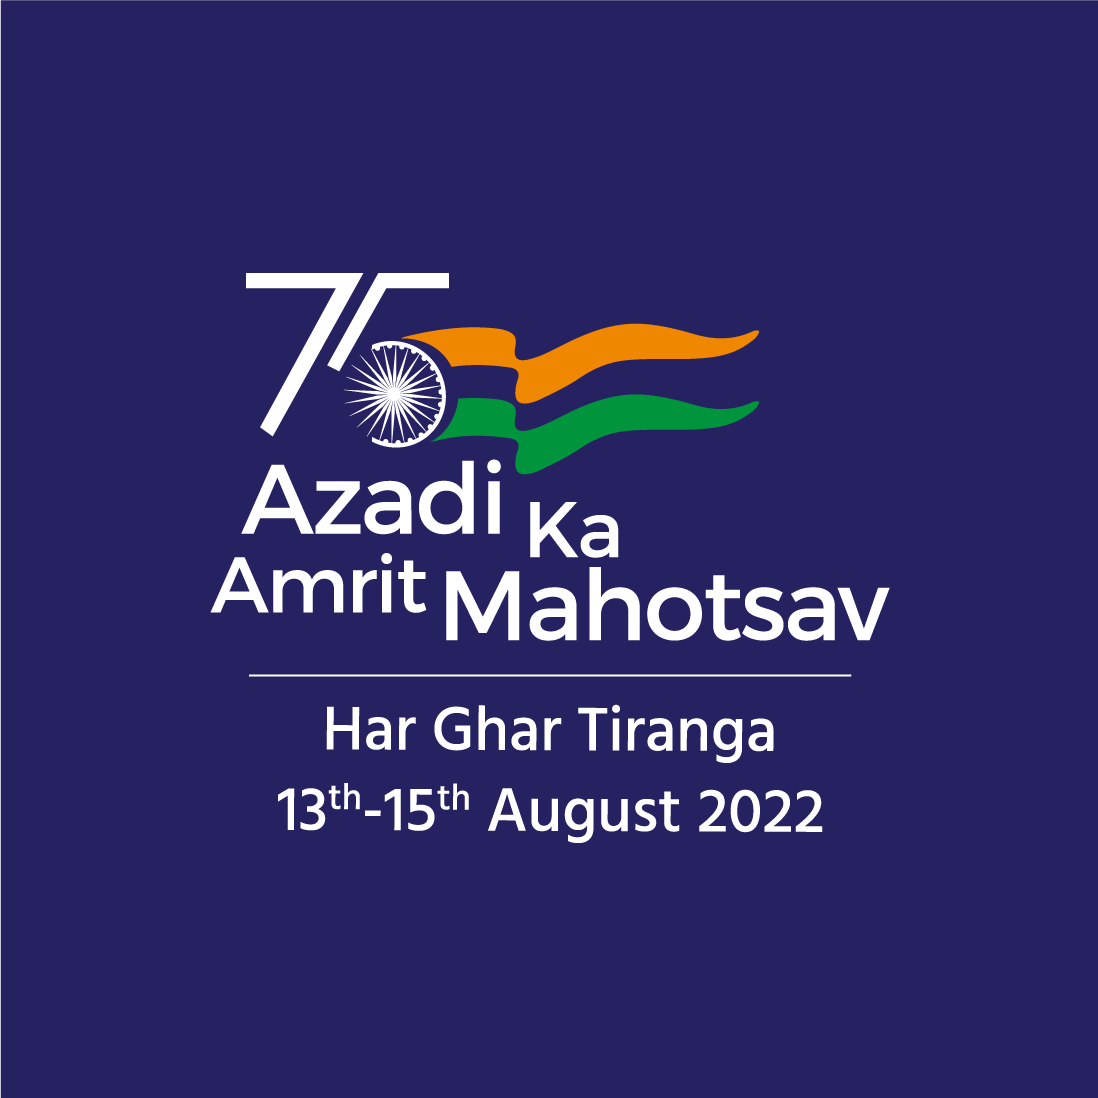 Har Ghar Tiranga logo